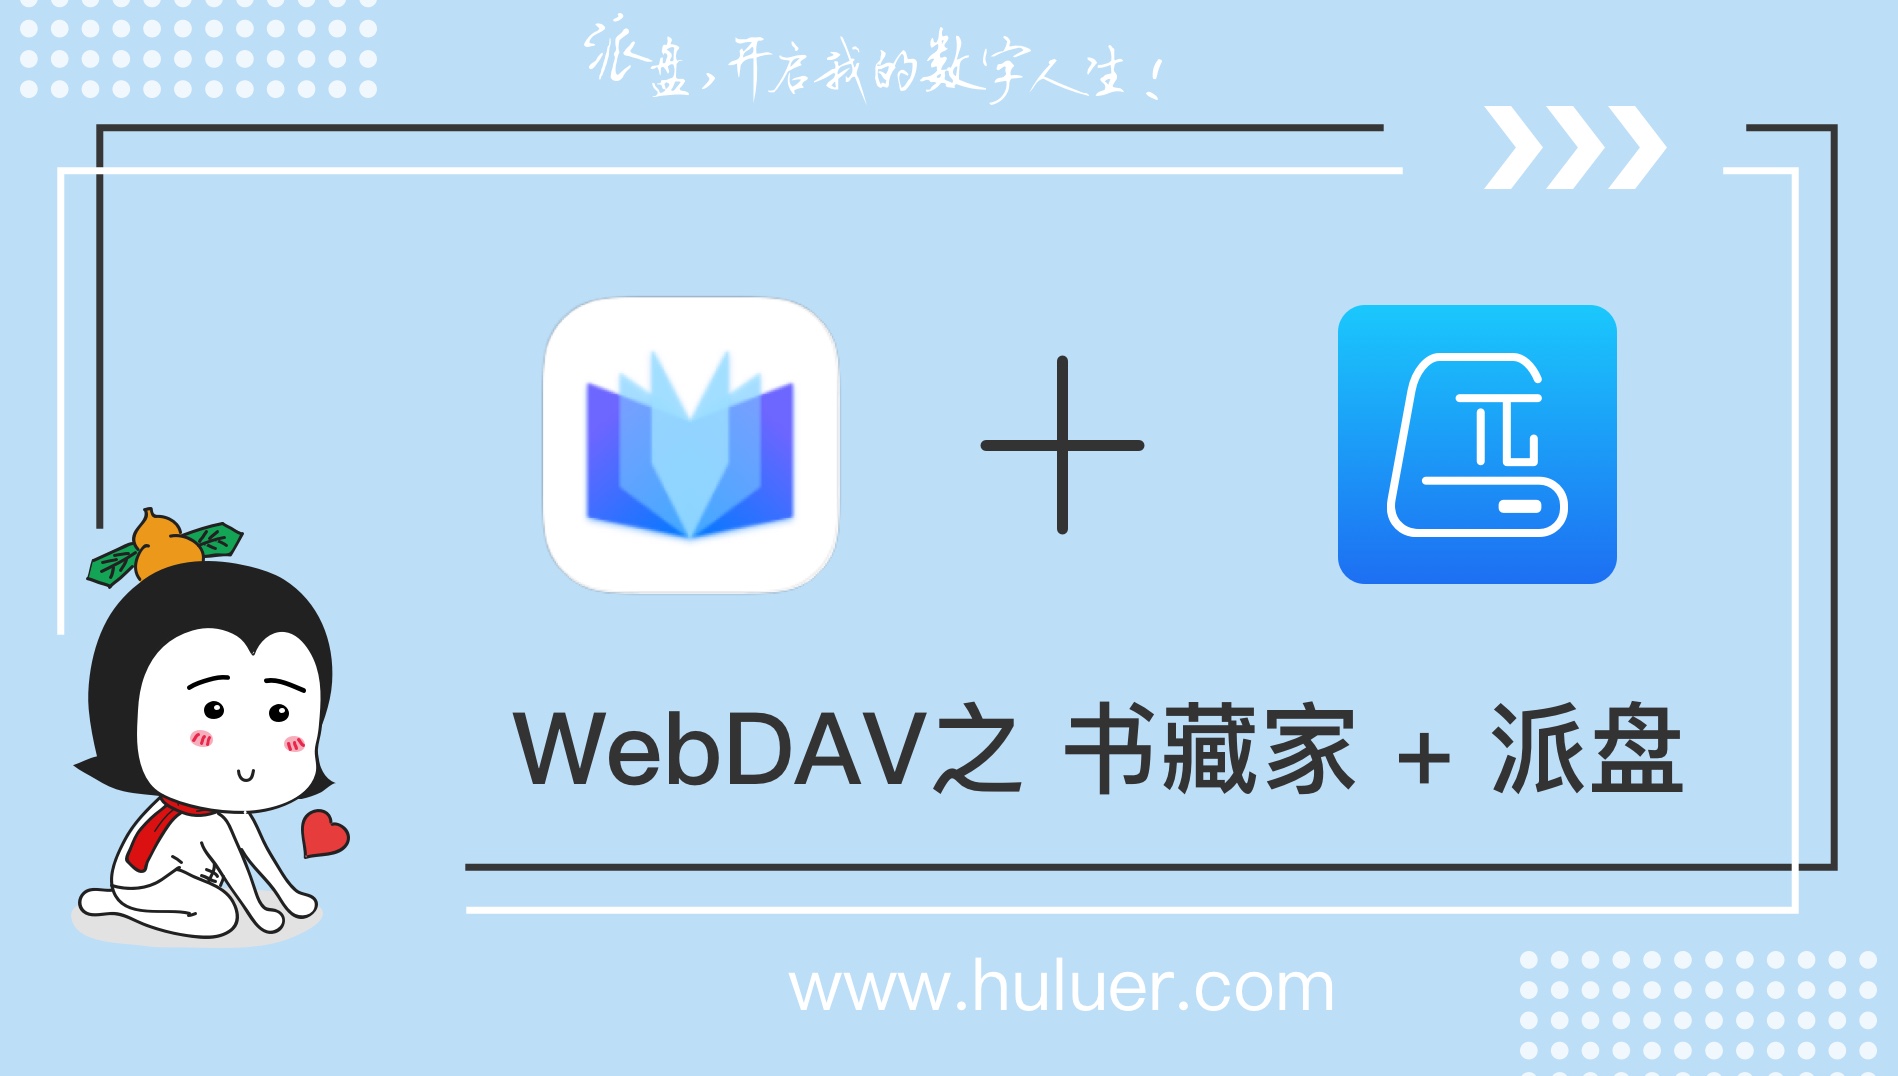 WebDAV之π-Disk派盘 + 书藏家